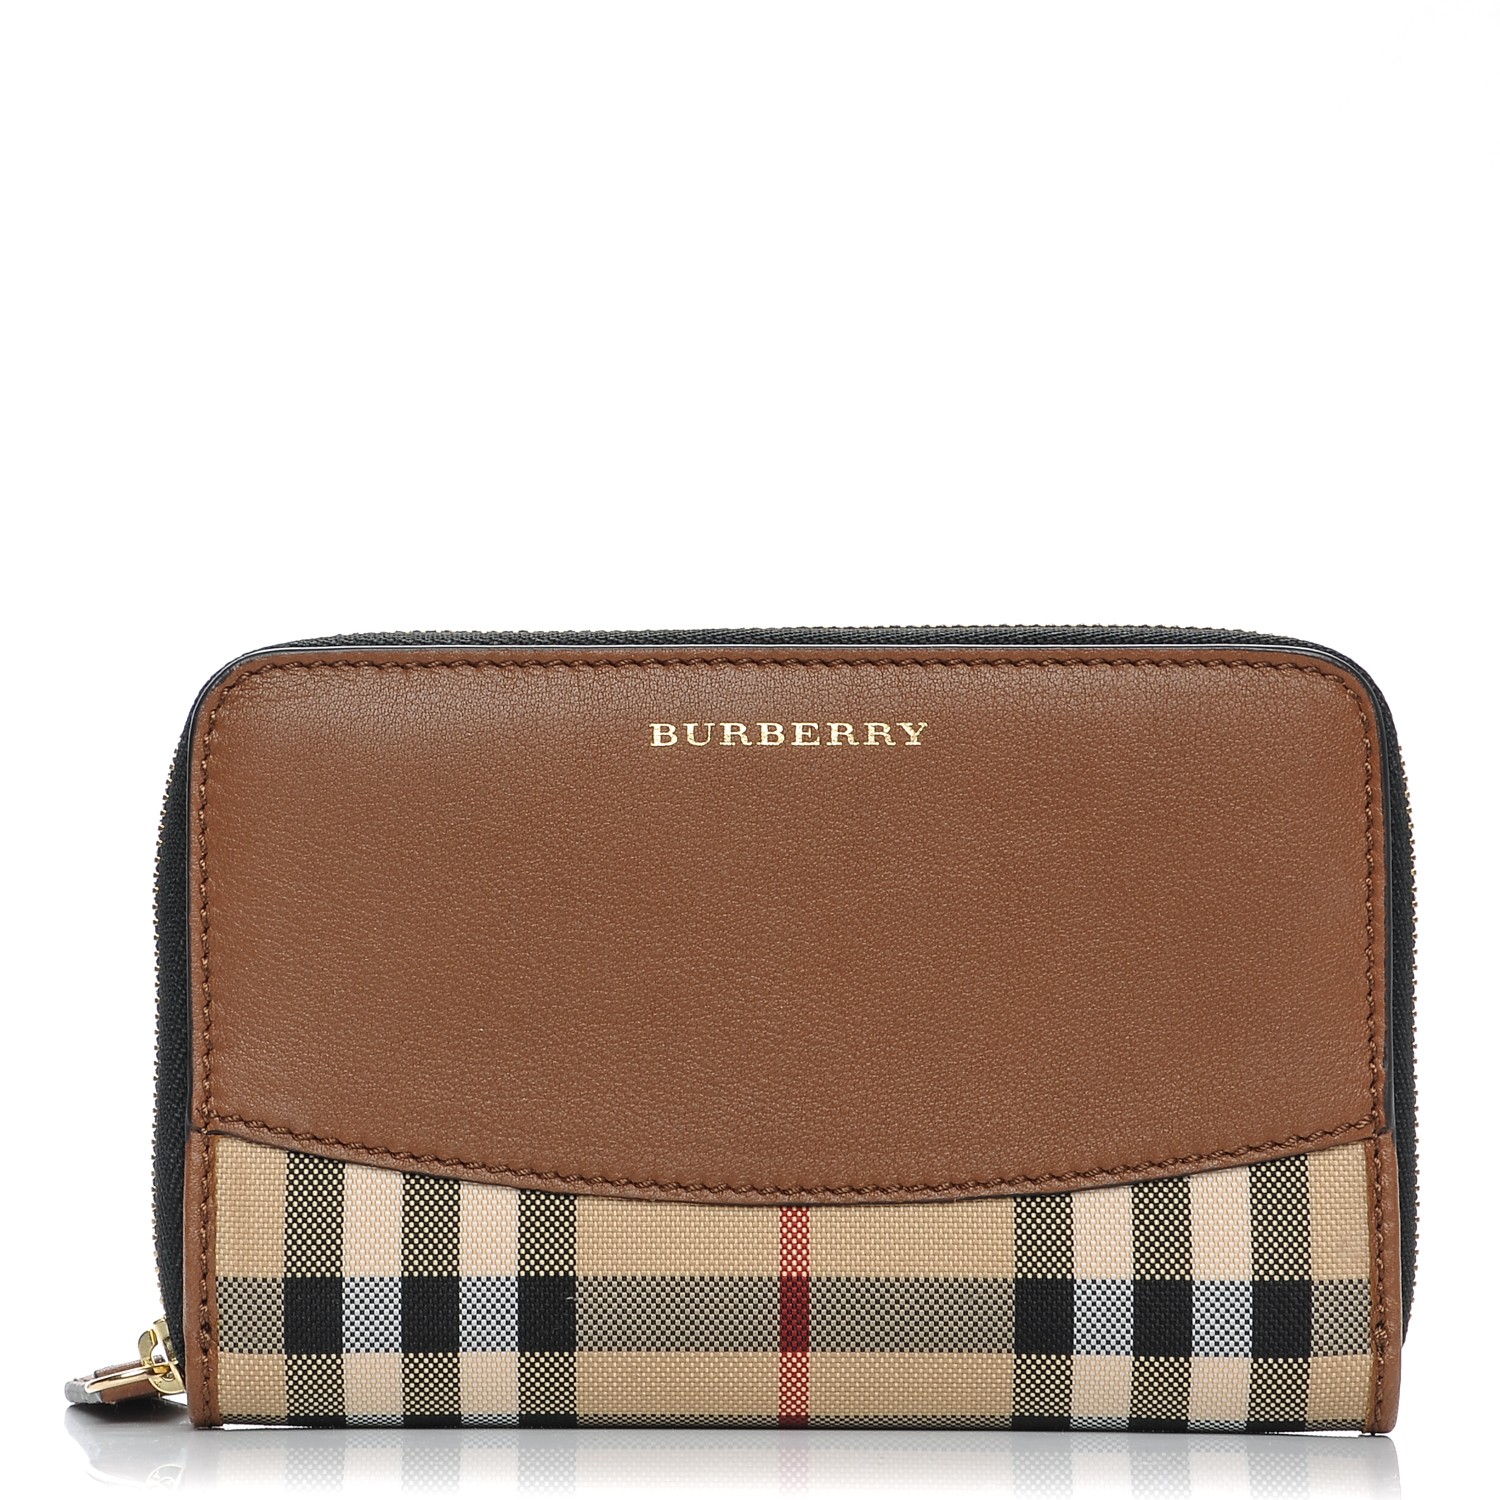 burberry zip wallet